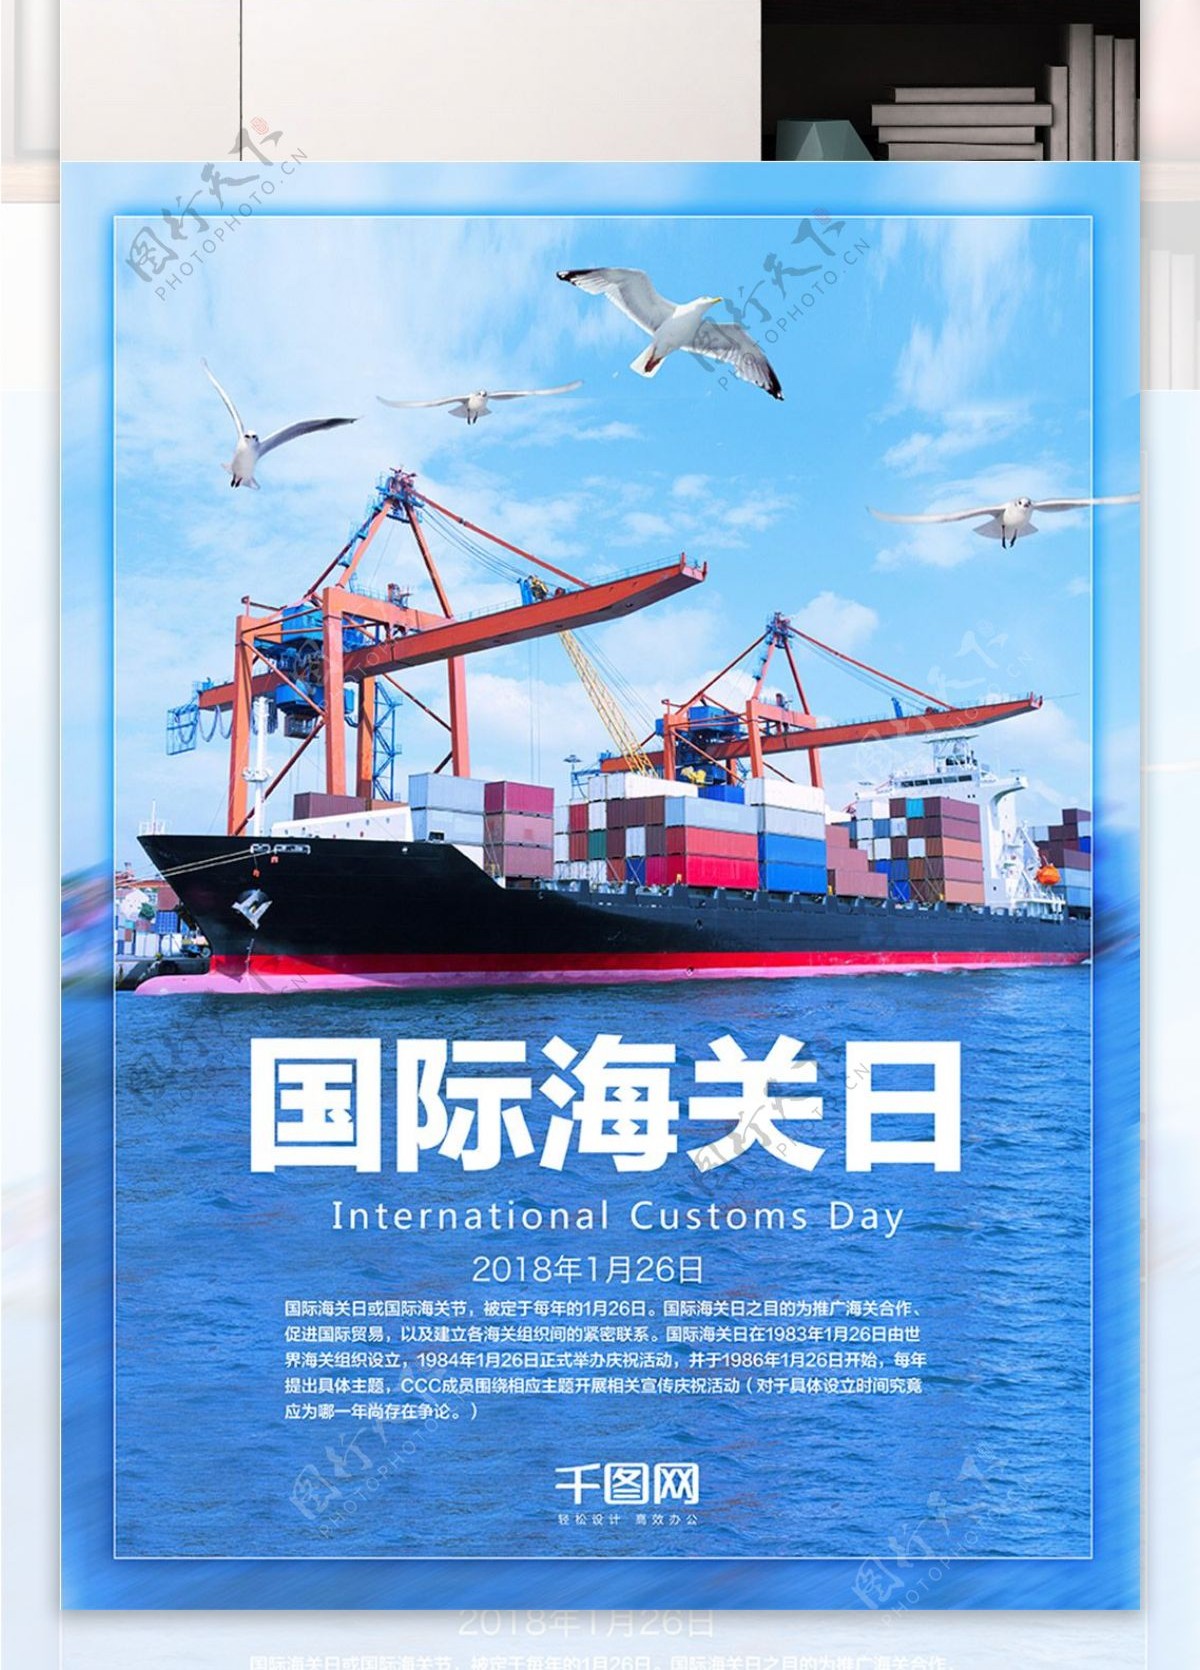 蓝色大海轮船集装箱背景国际海关日海报